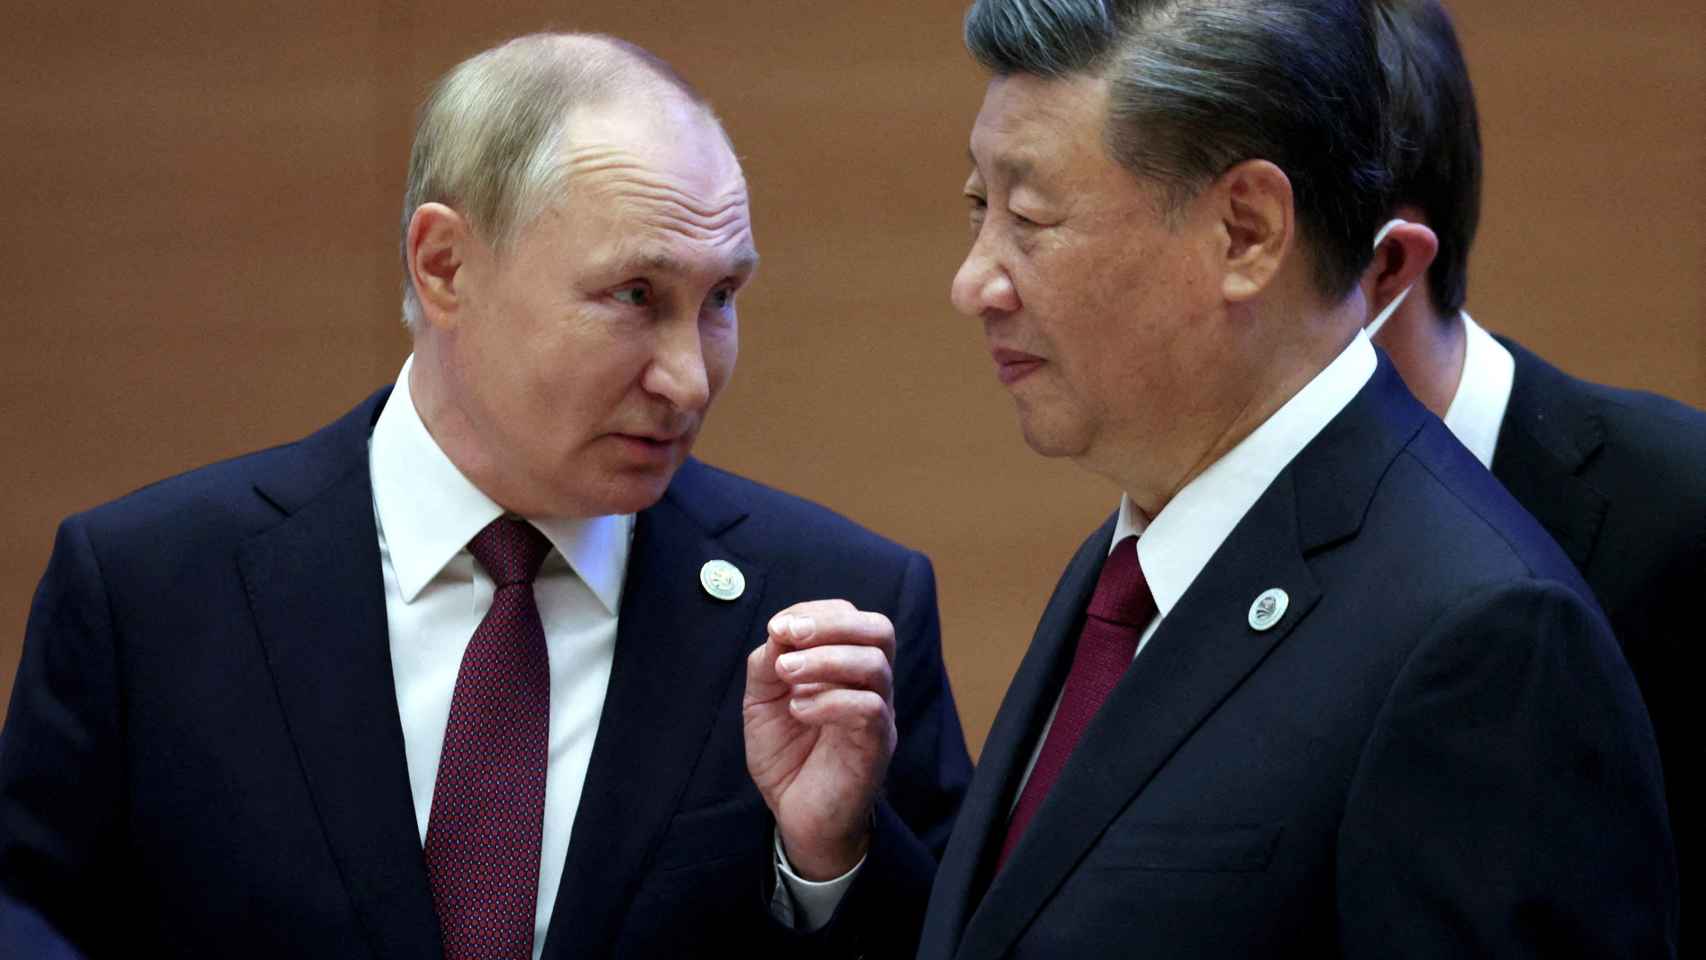 El presidente ruso, Vladimir Putin, habla con el presidente chino, Xi Jinping, antes de una reunión.